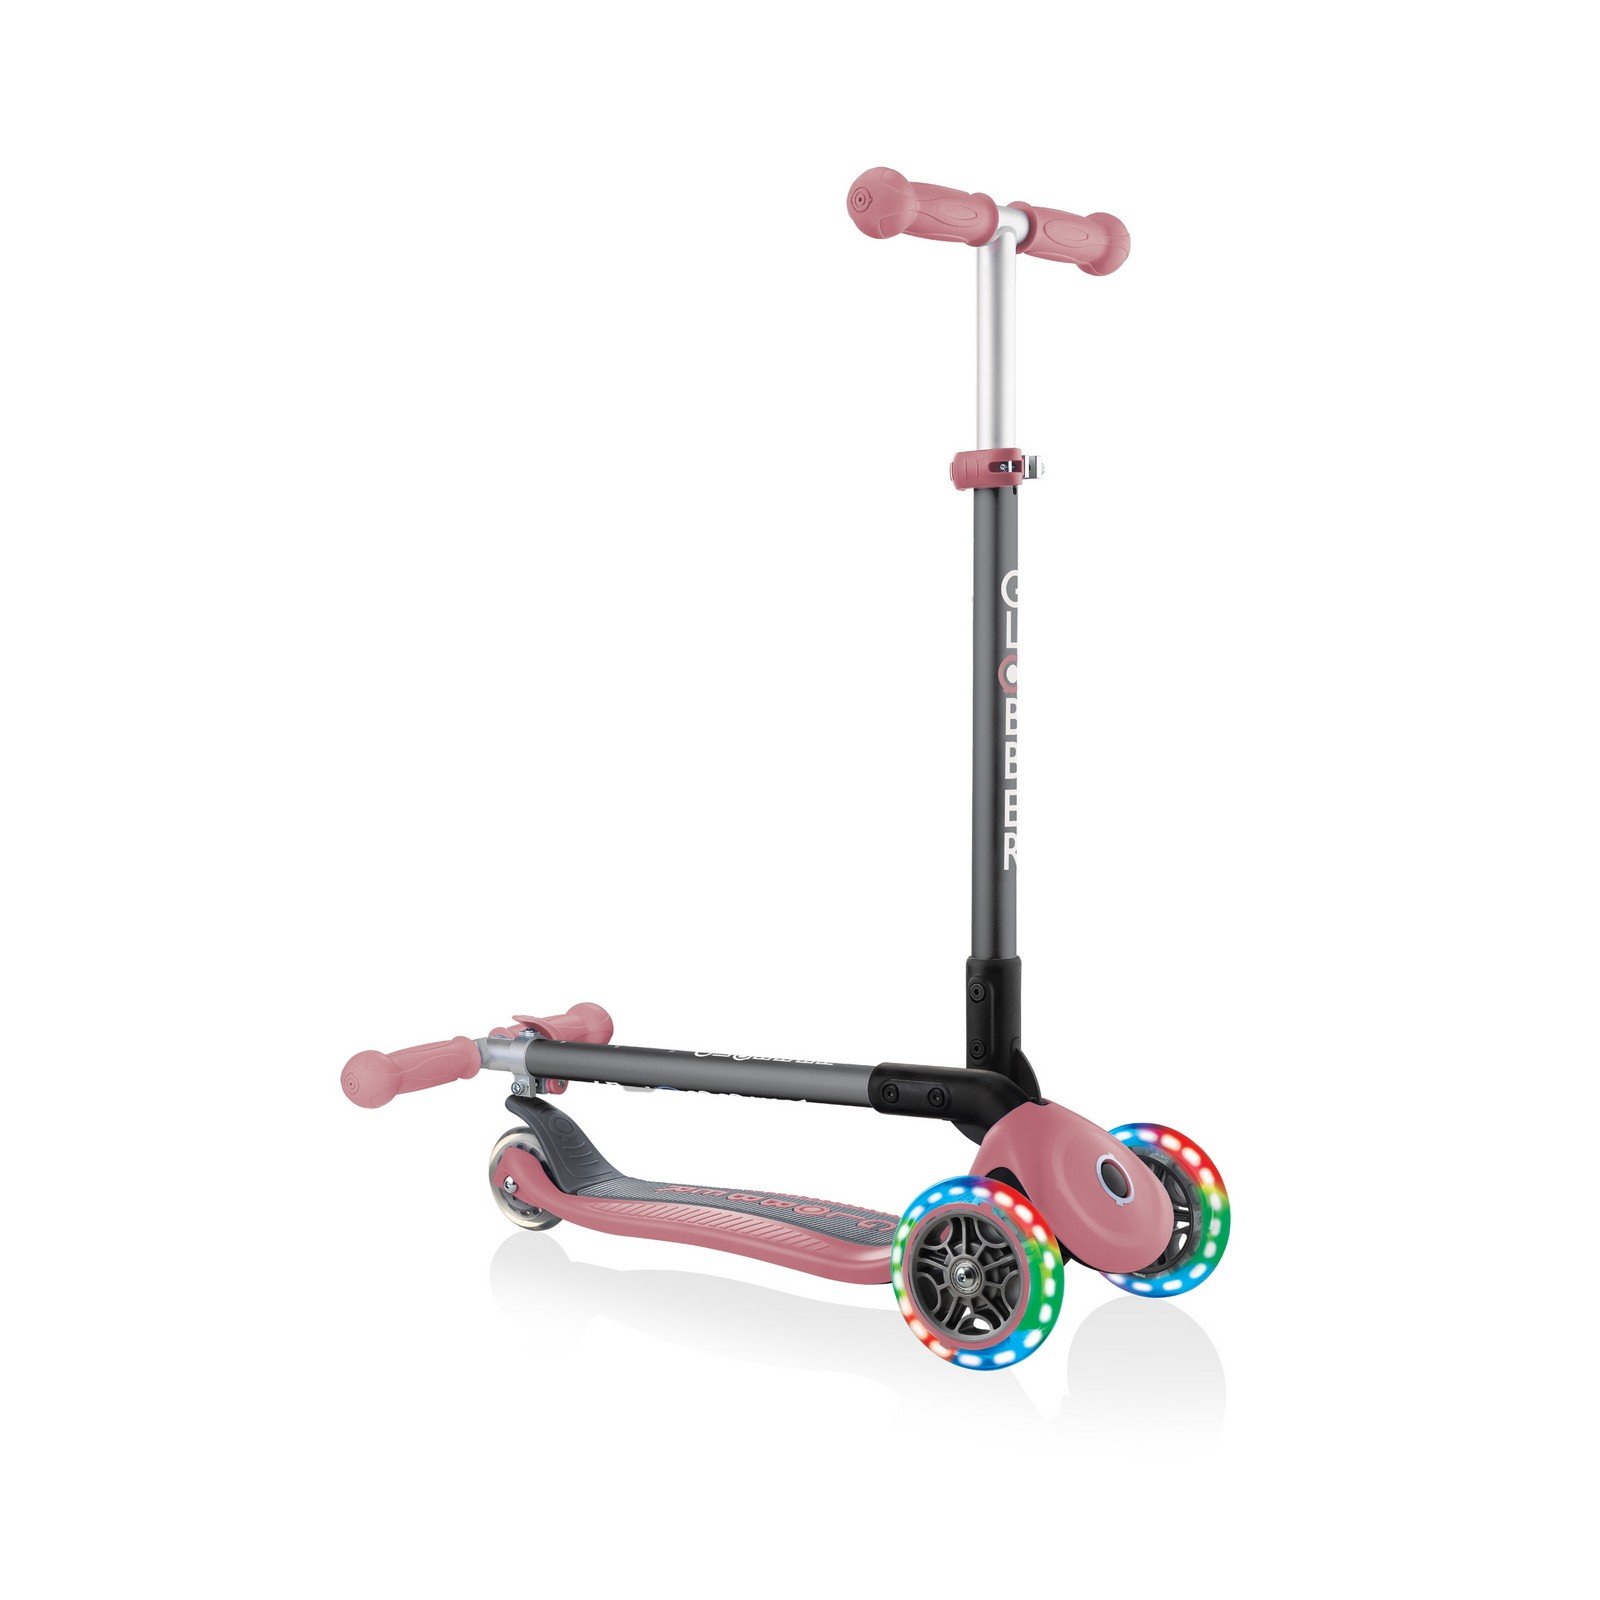 Самокат Globber Primo foldable lights, колеса з підсвічуванням, пастельно-рожевий (432-210-2) - фото 5